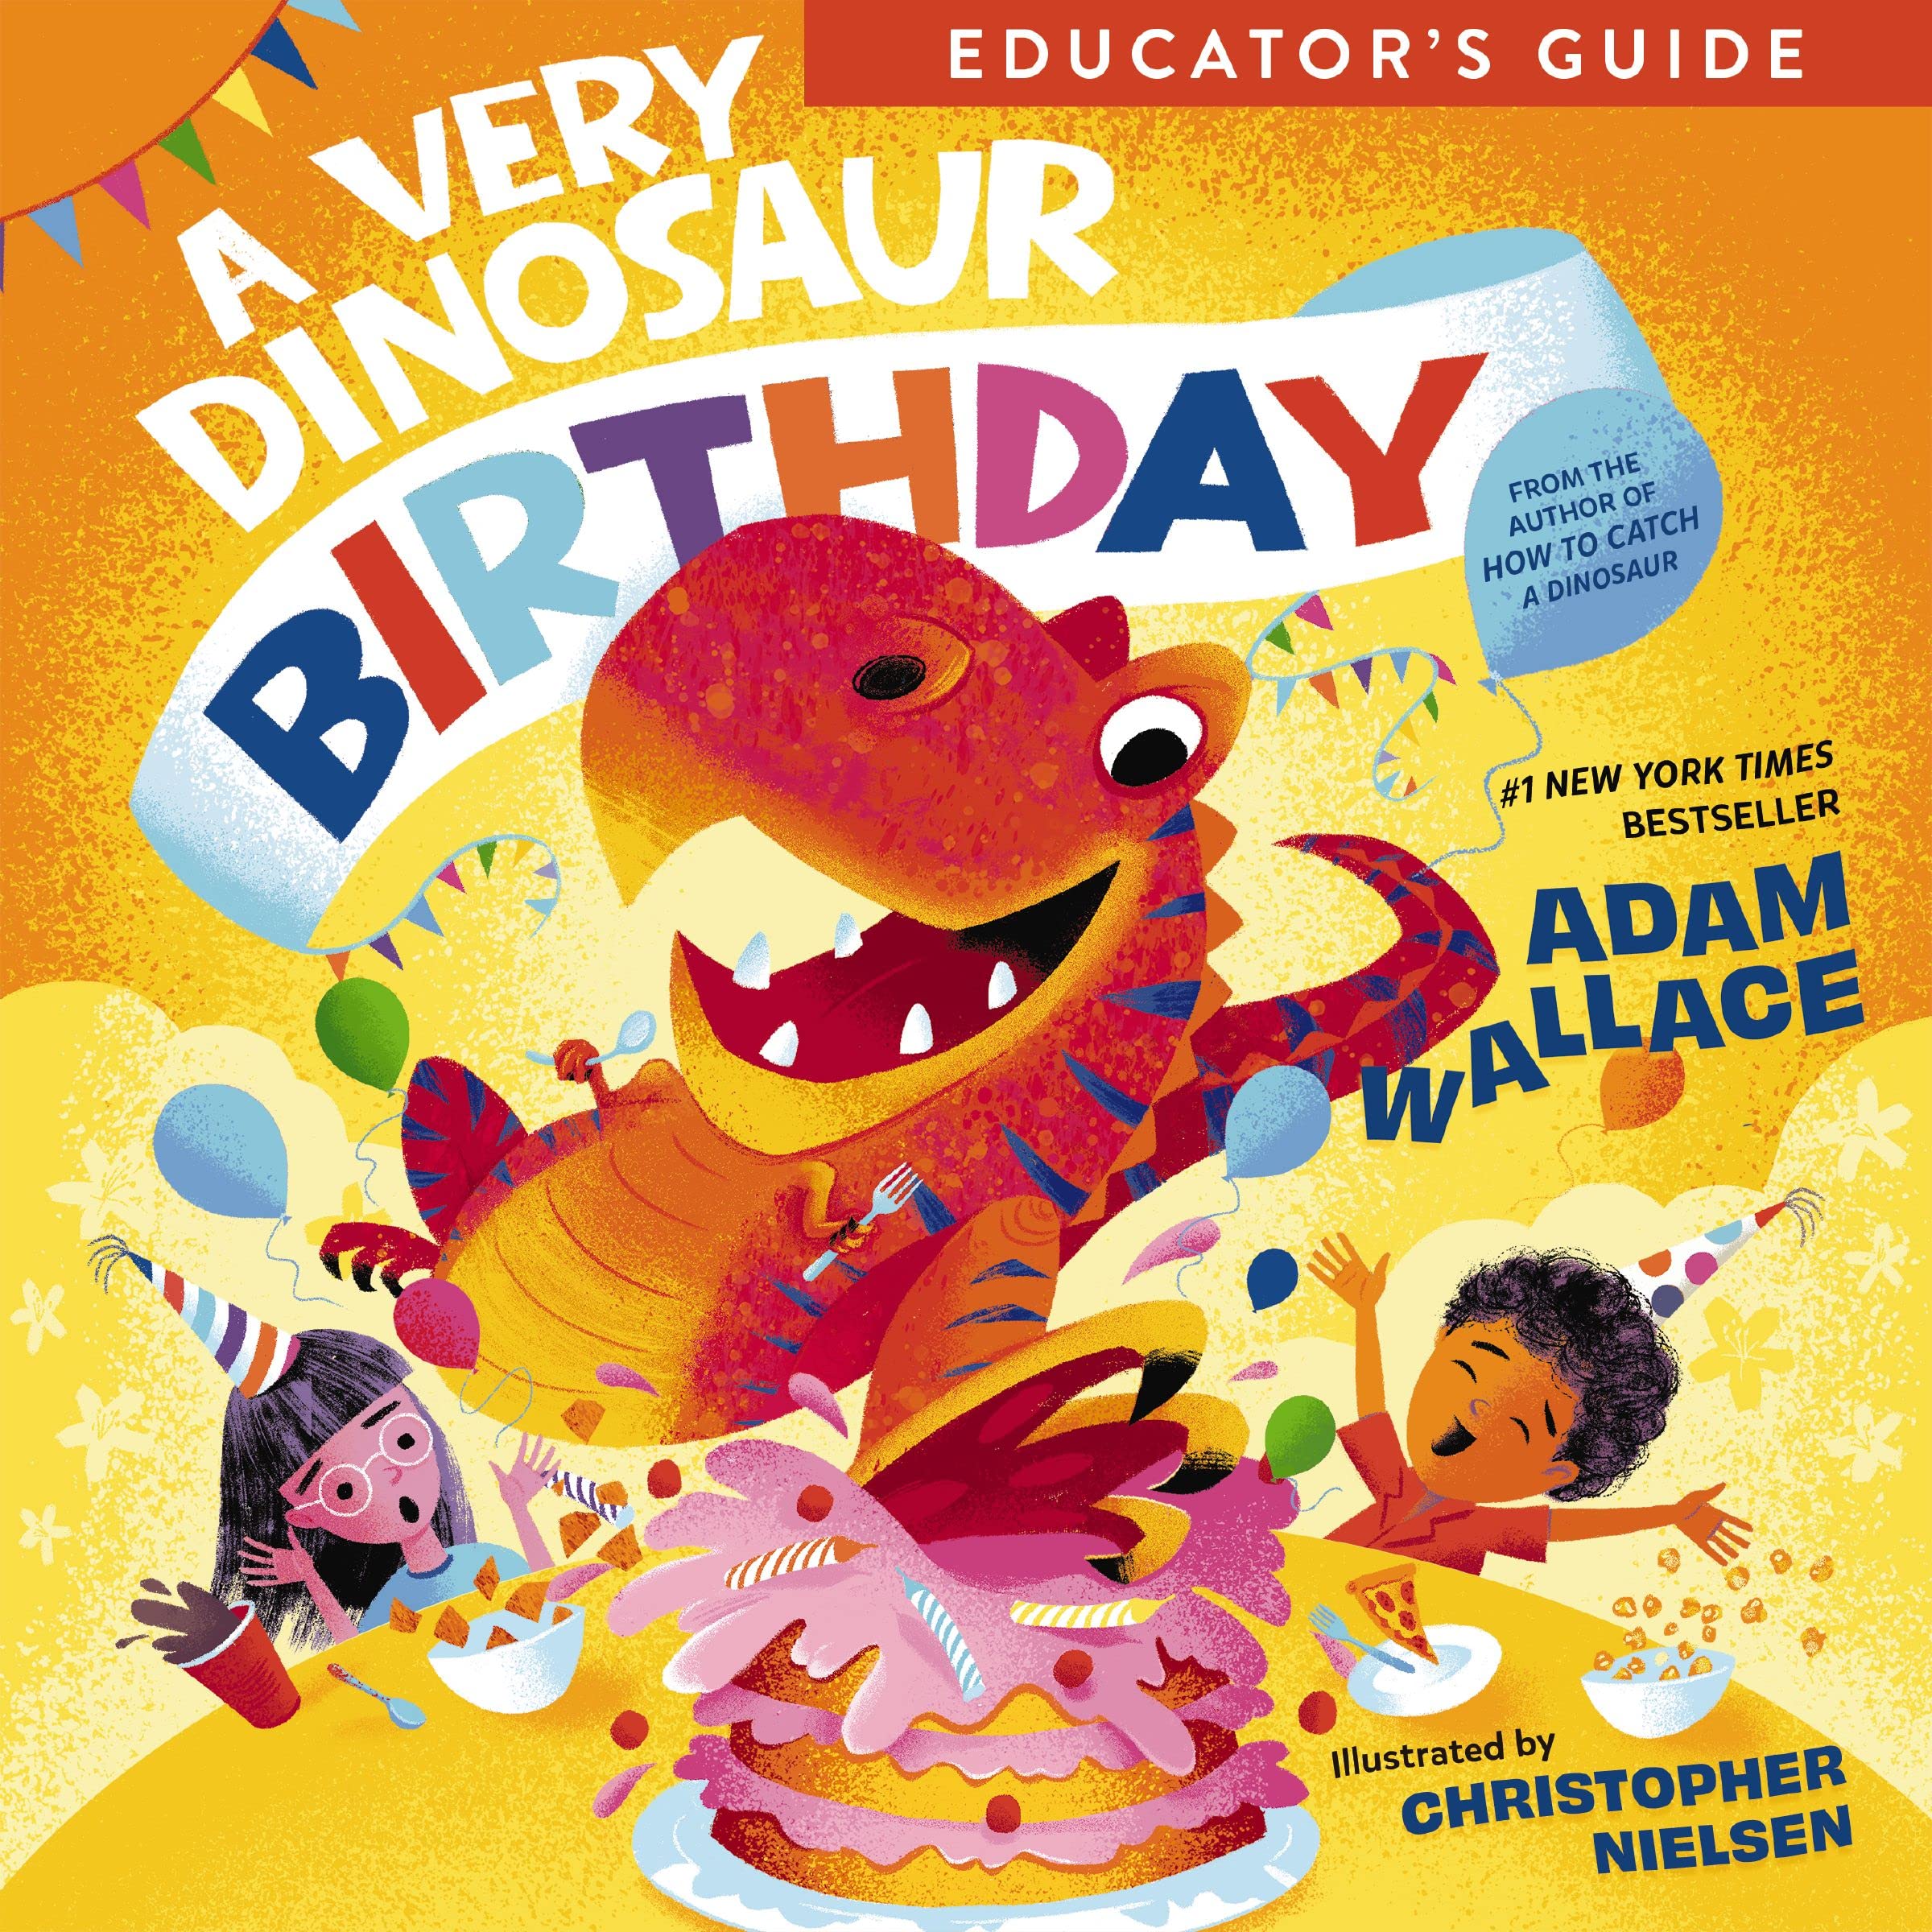 A Very Dinosaur Birthday Educator's Guide (A Very Celebration Series)